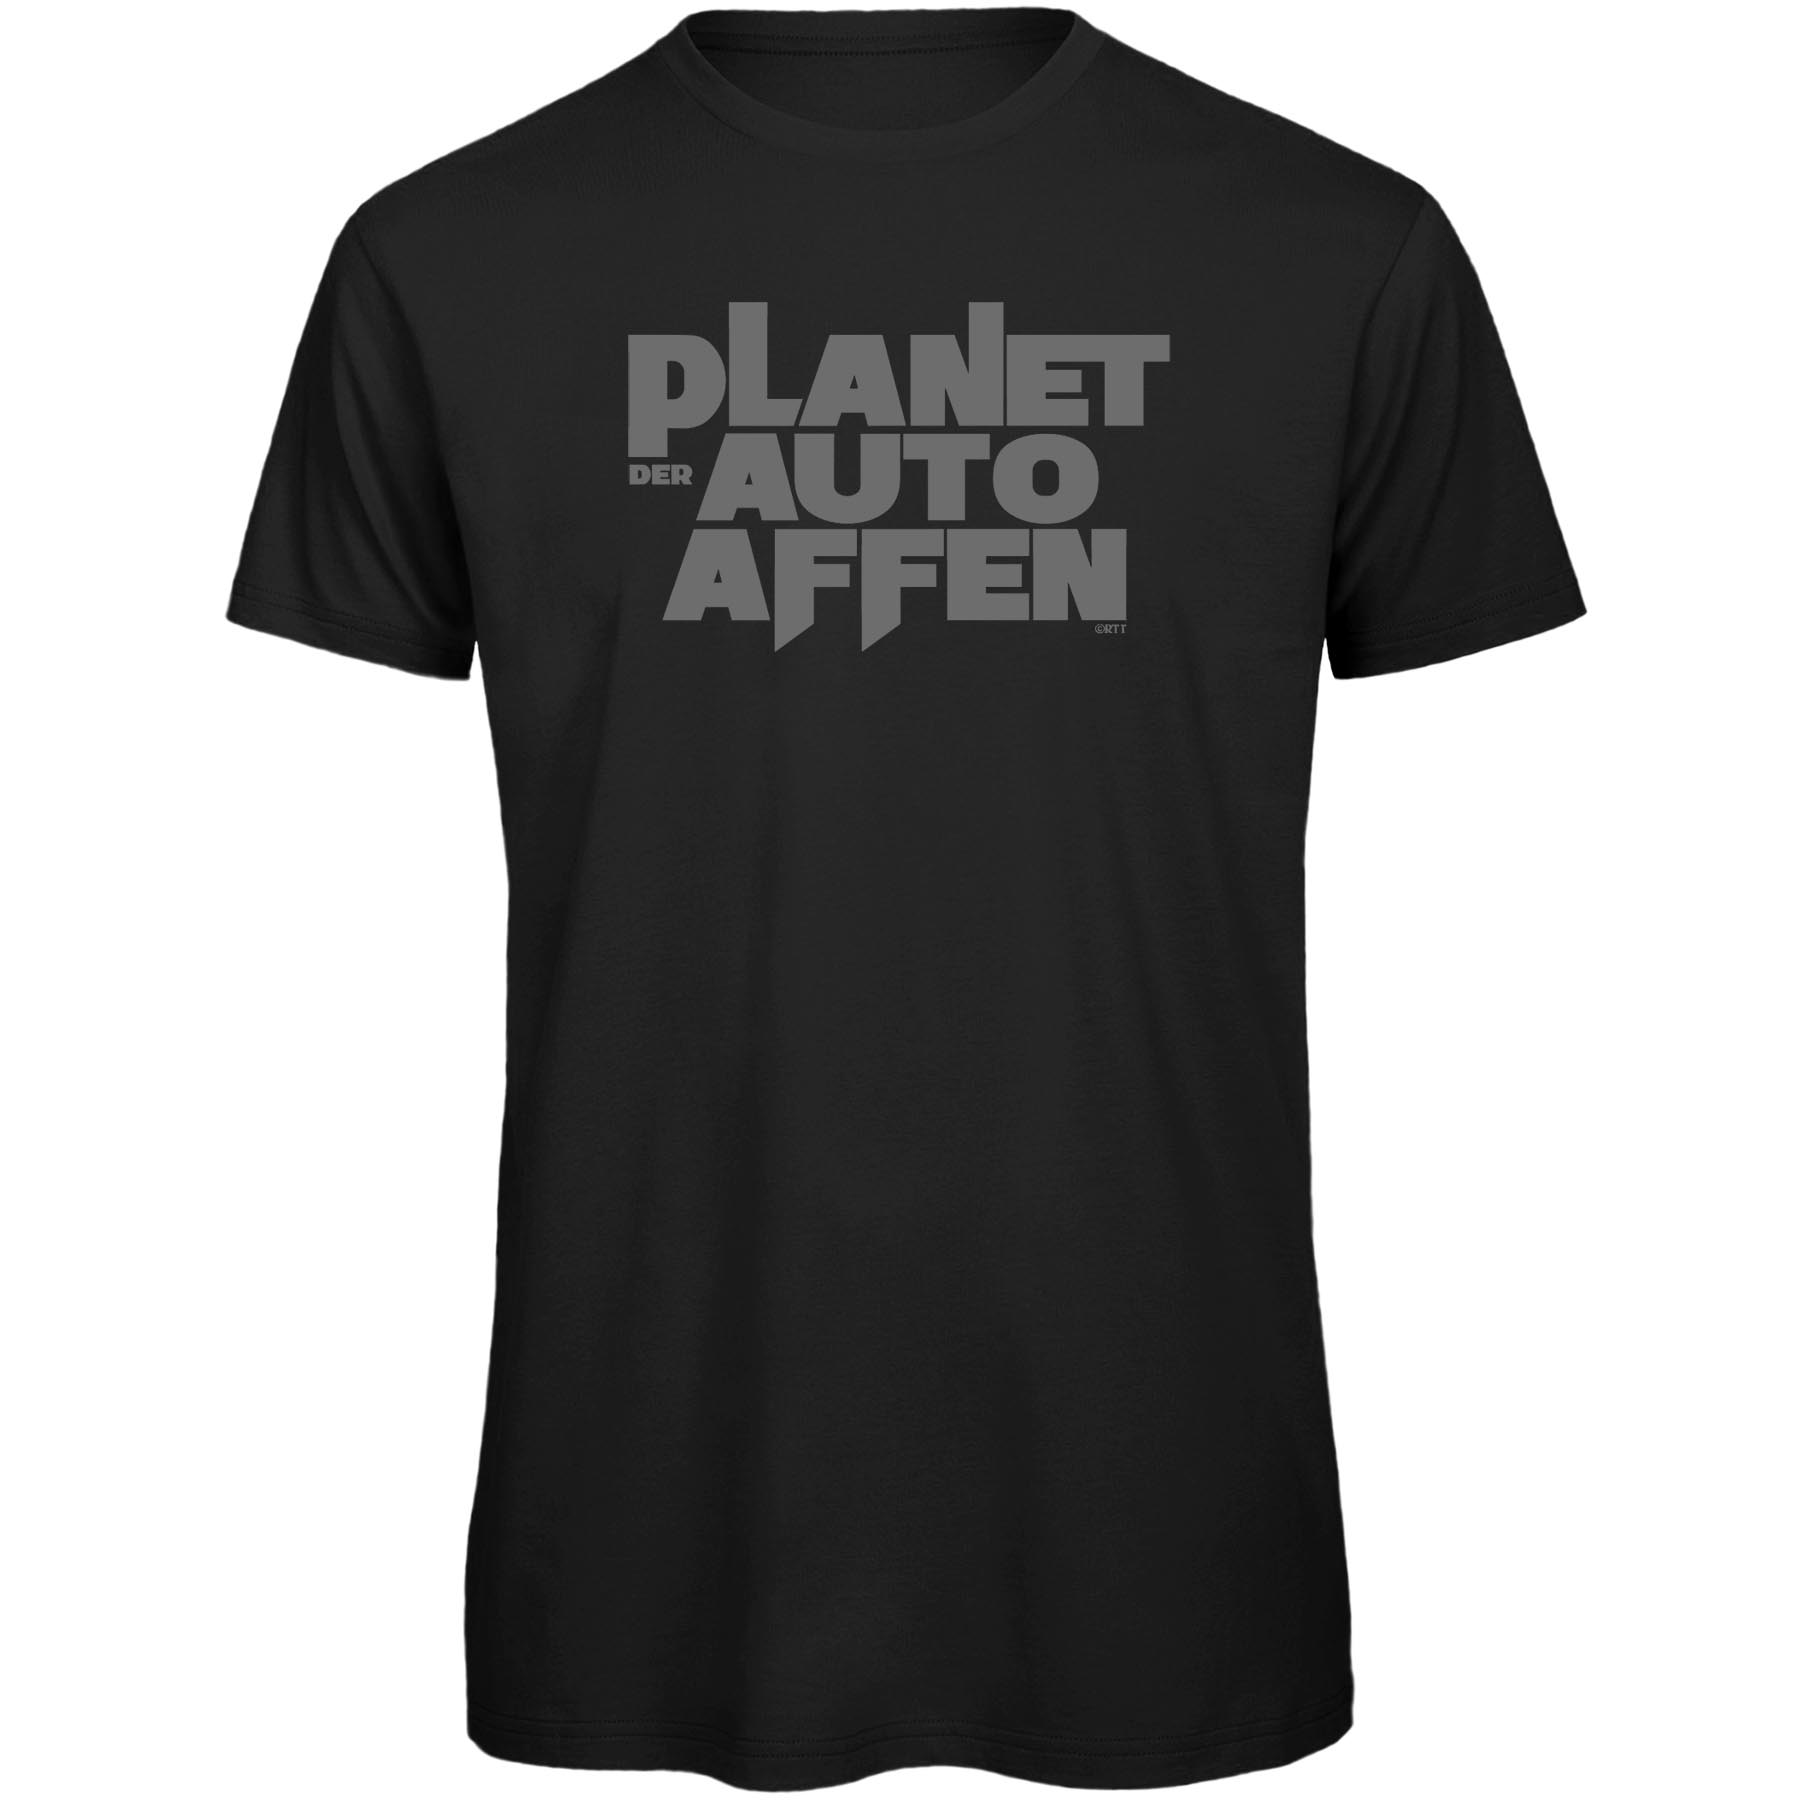 Produktbild von RTTshirts Planet der Autoaffen Fahrrad T-Shirt Herren - schwarz